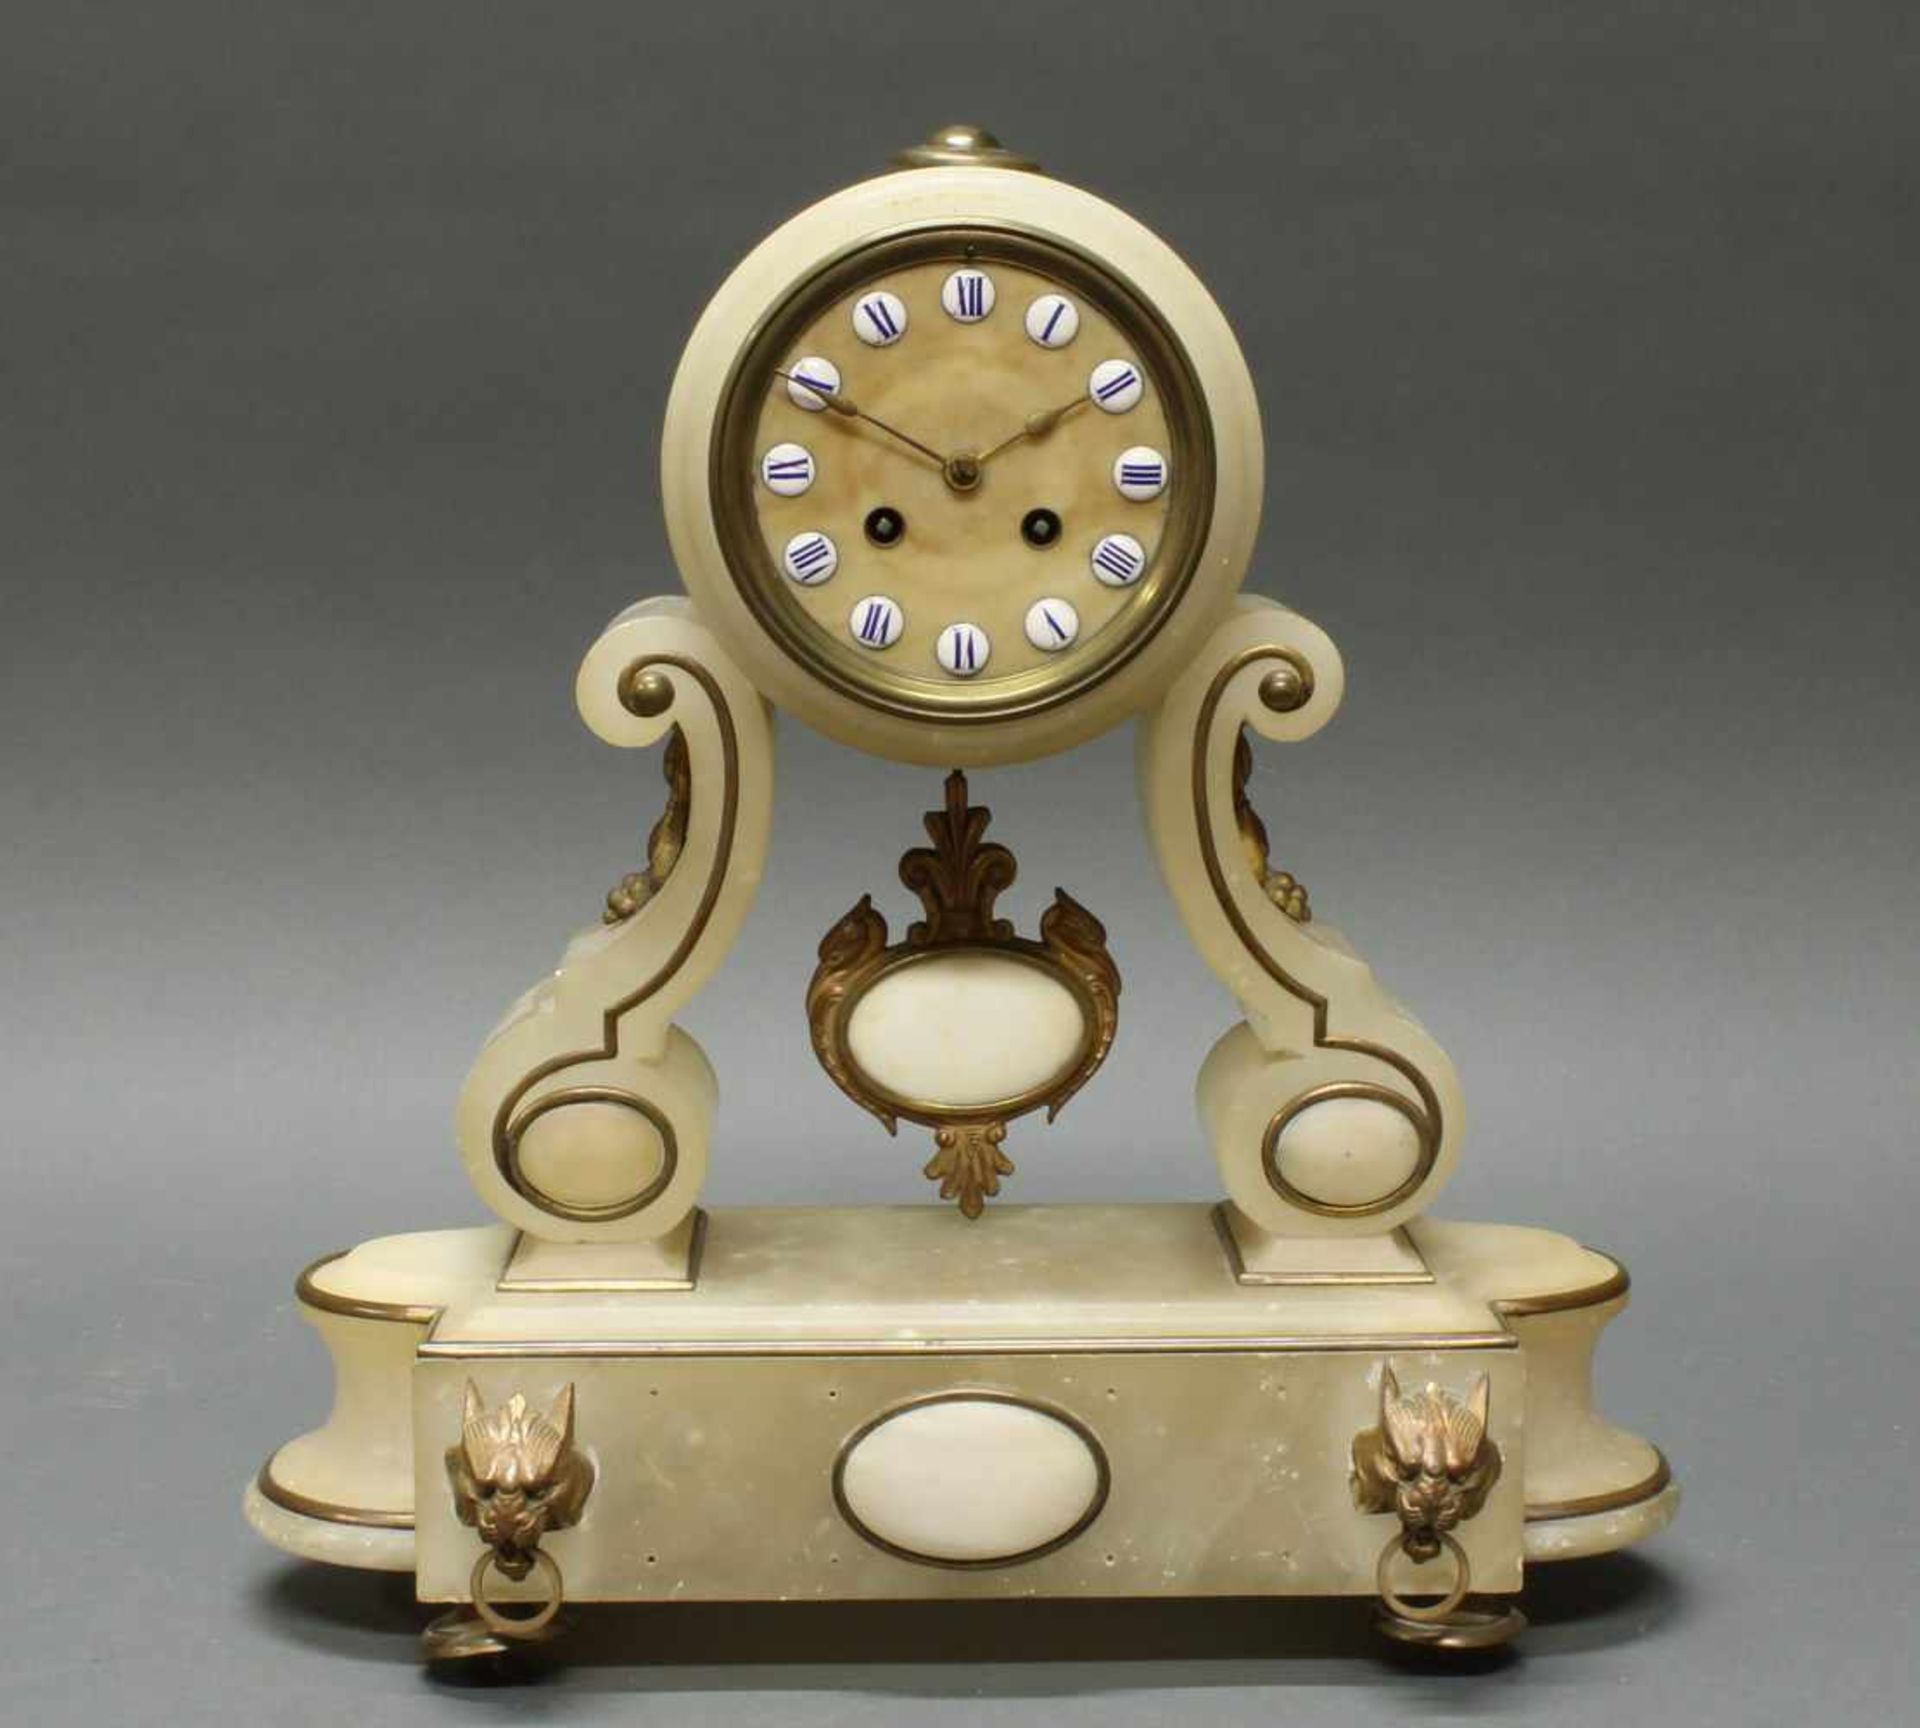 Salonpendule, Frankreich, um 1870, Alabaster, rundes Uhrenhäuse von Voluten getragen auf Sockel,